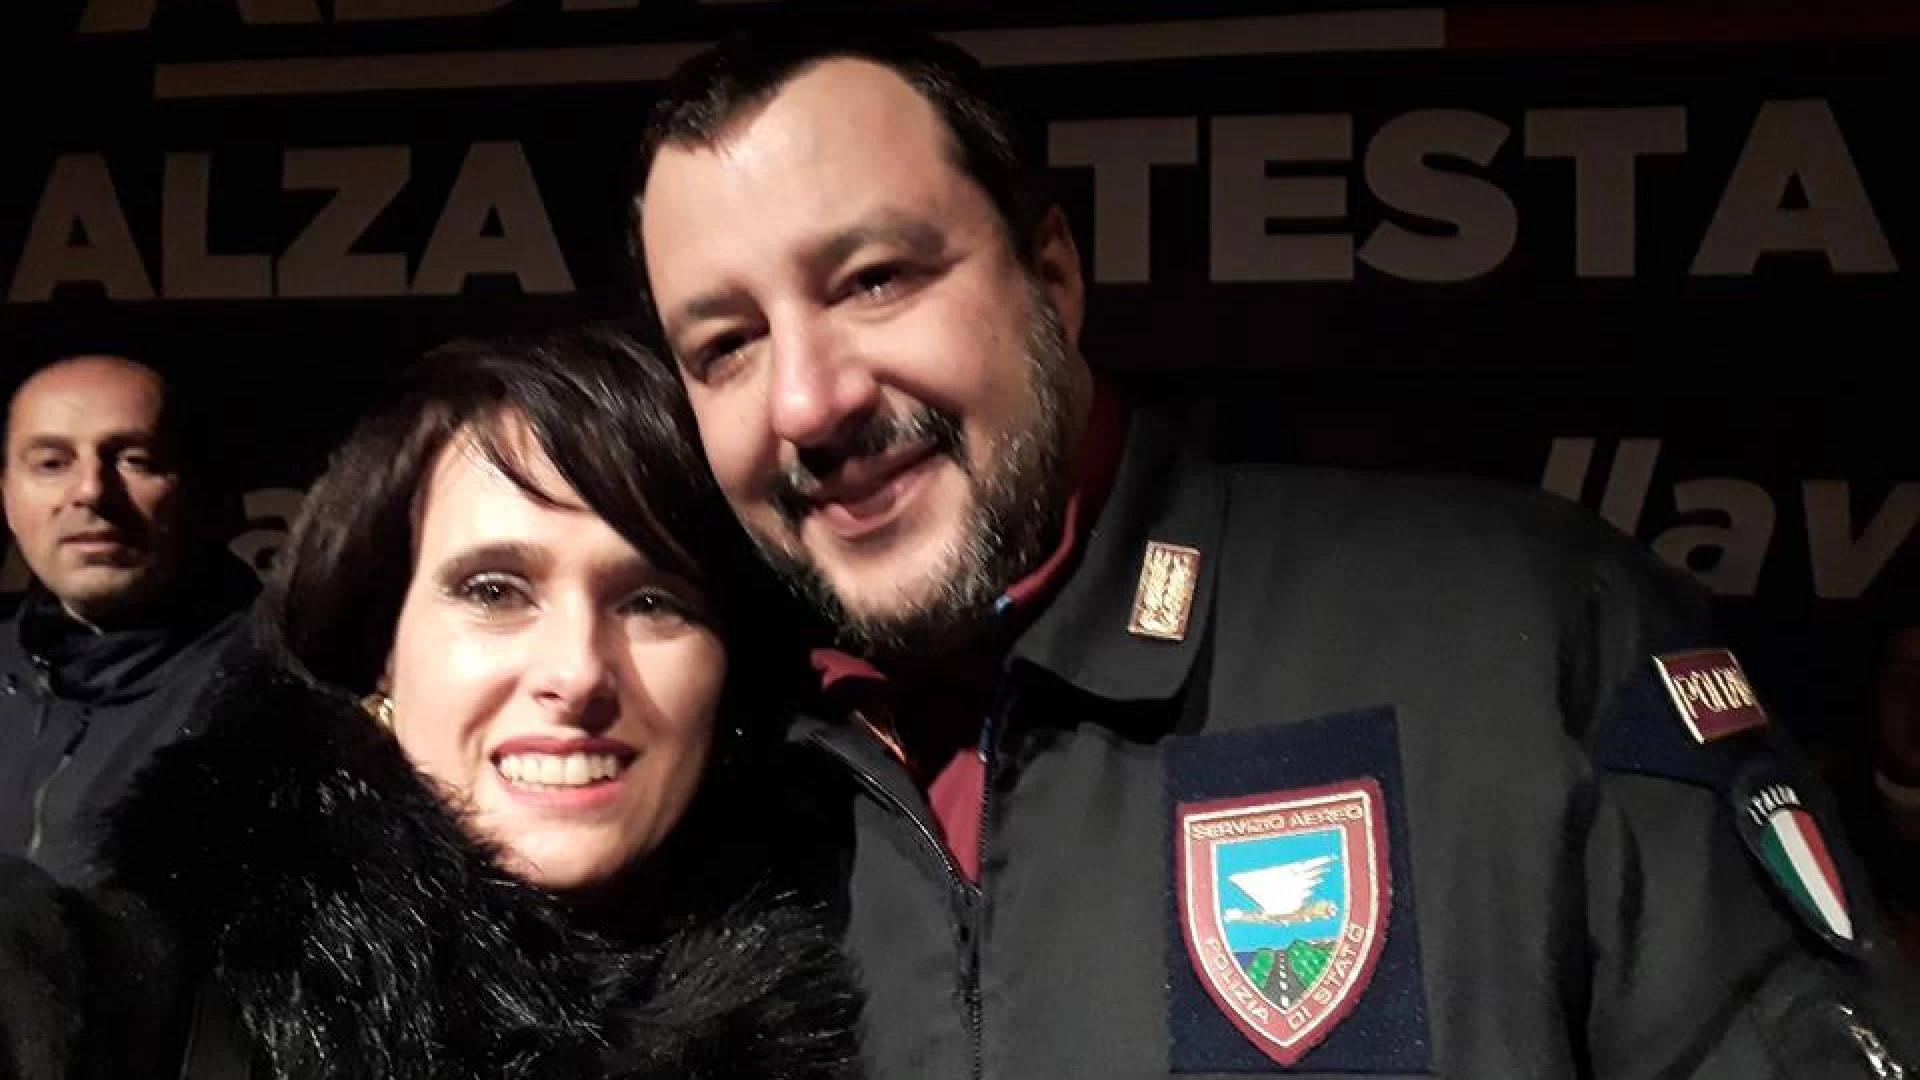 Isernia: lotta alla droga continua sul territorio. Aida Romagnuolo ringrazia il Questore Pellicone. “A breve informerò il Ministro Salvini”.